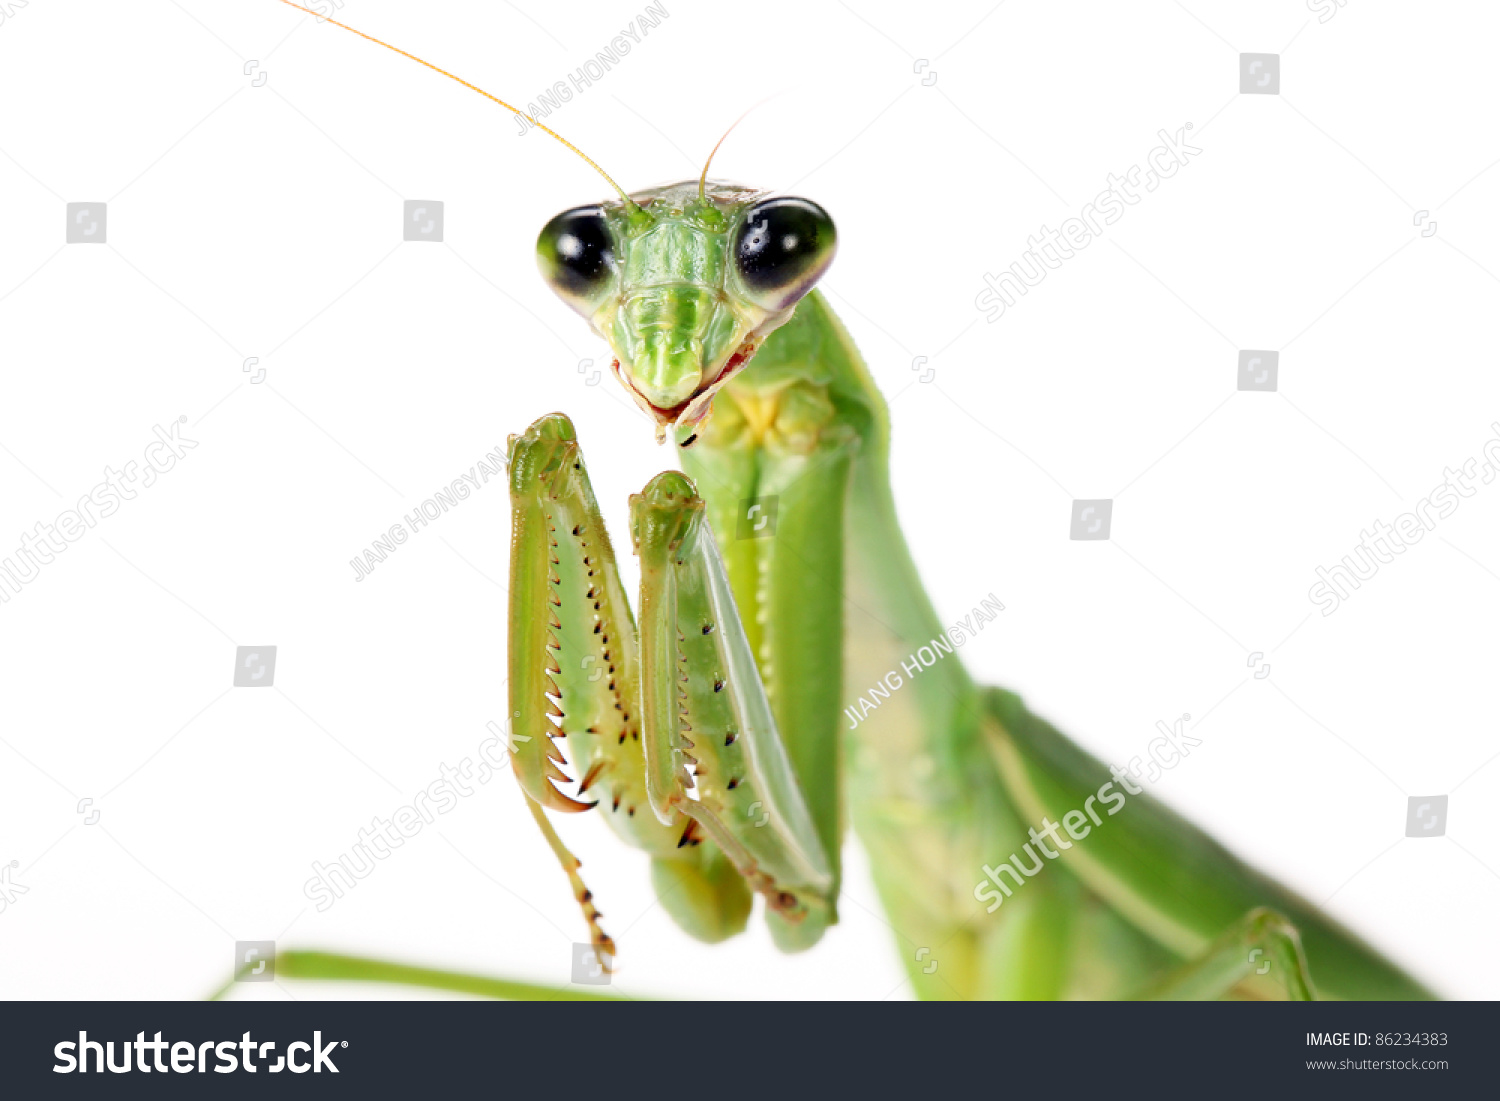 stock-photo-praying-mantis-on-white-back